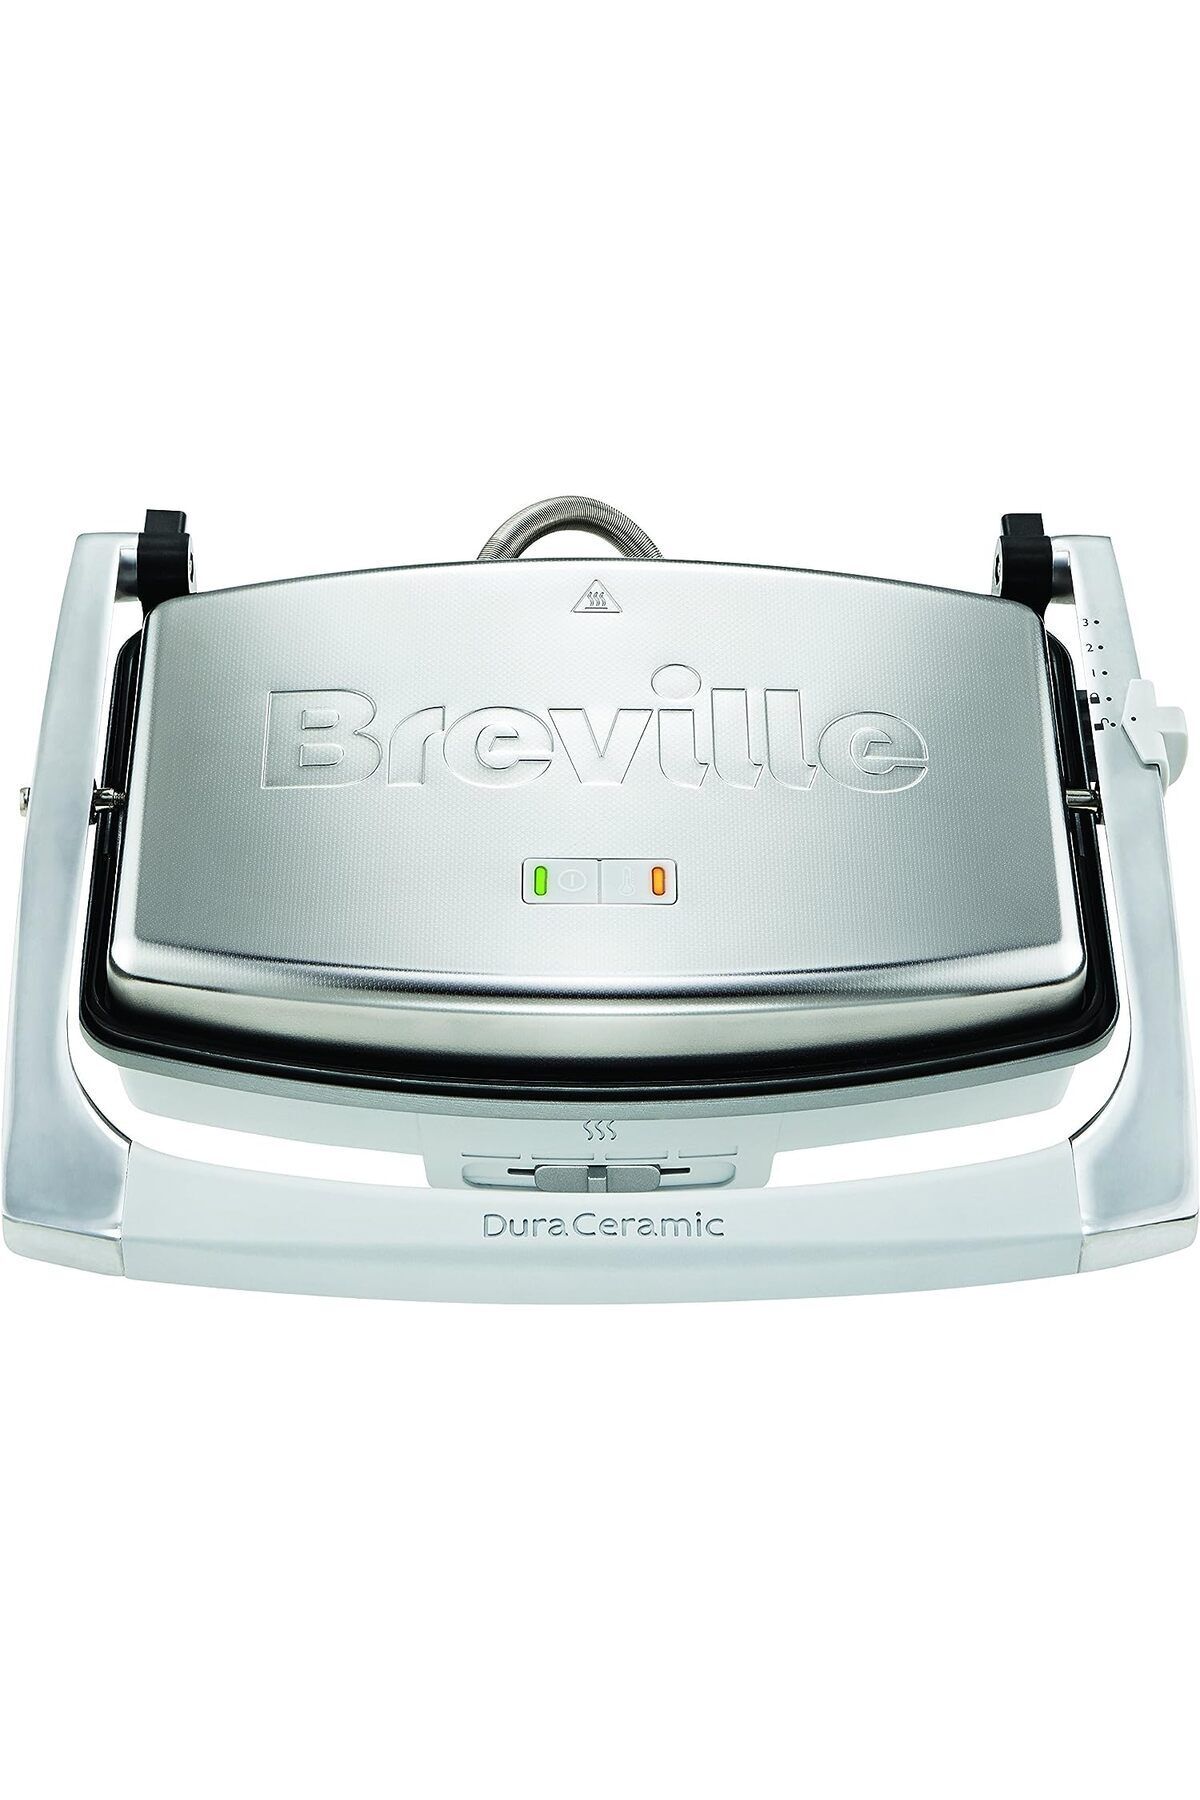 Breville Astarlı Breville sandviç makinesi DuraCeramic 1000 W, kızak Plakaları, Gümüş